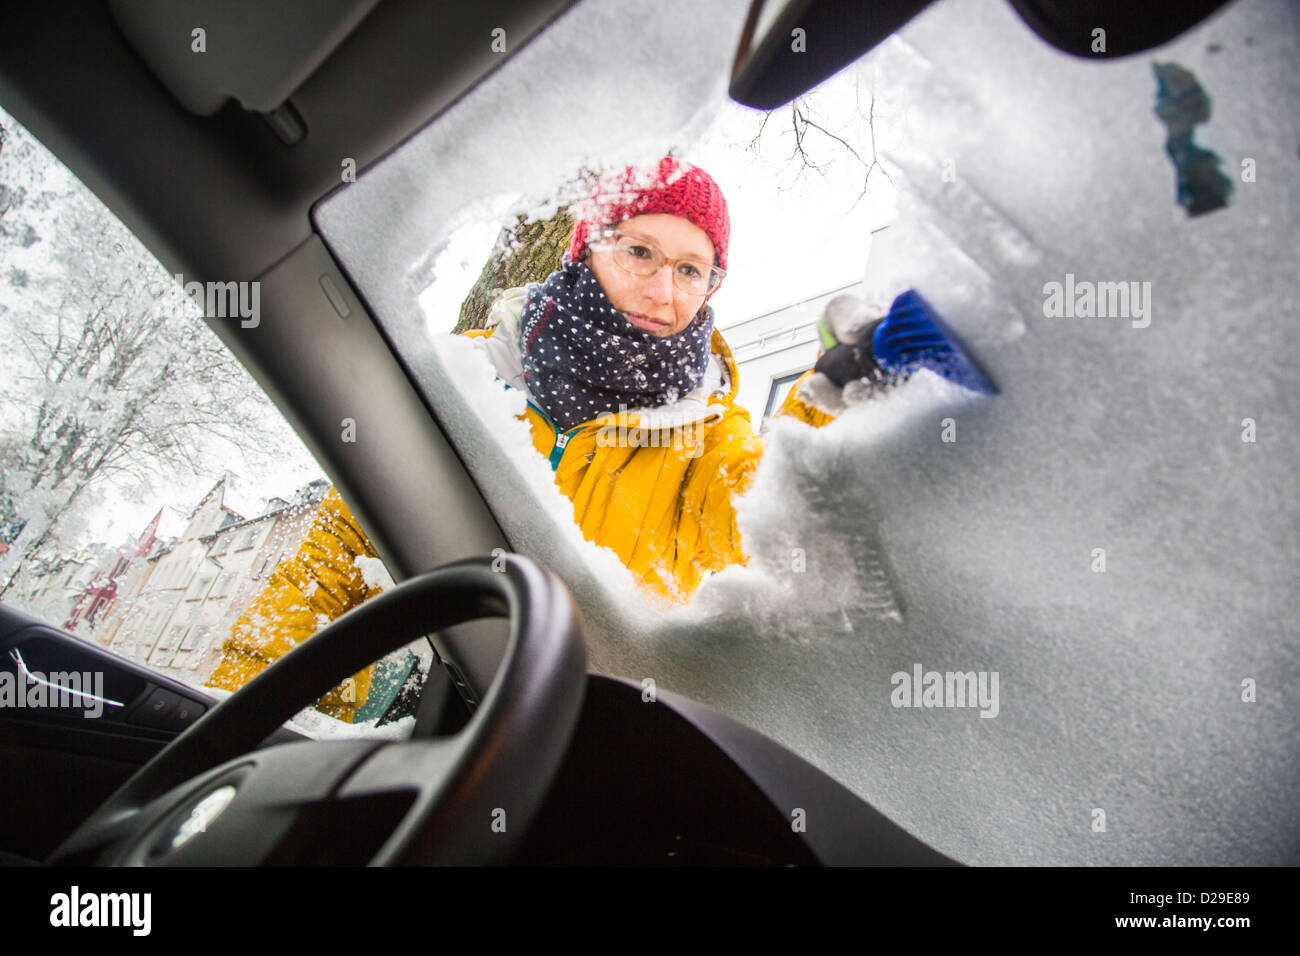 Das Auto ist auf einer Winterstraße mit einer Schutzhaube versehen. Schützt  das Fahrzeug vor Schnee und Eis Stockfotografie - Alamy